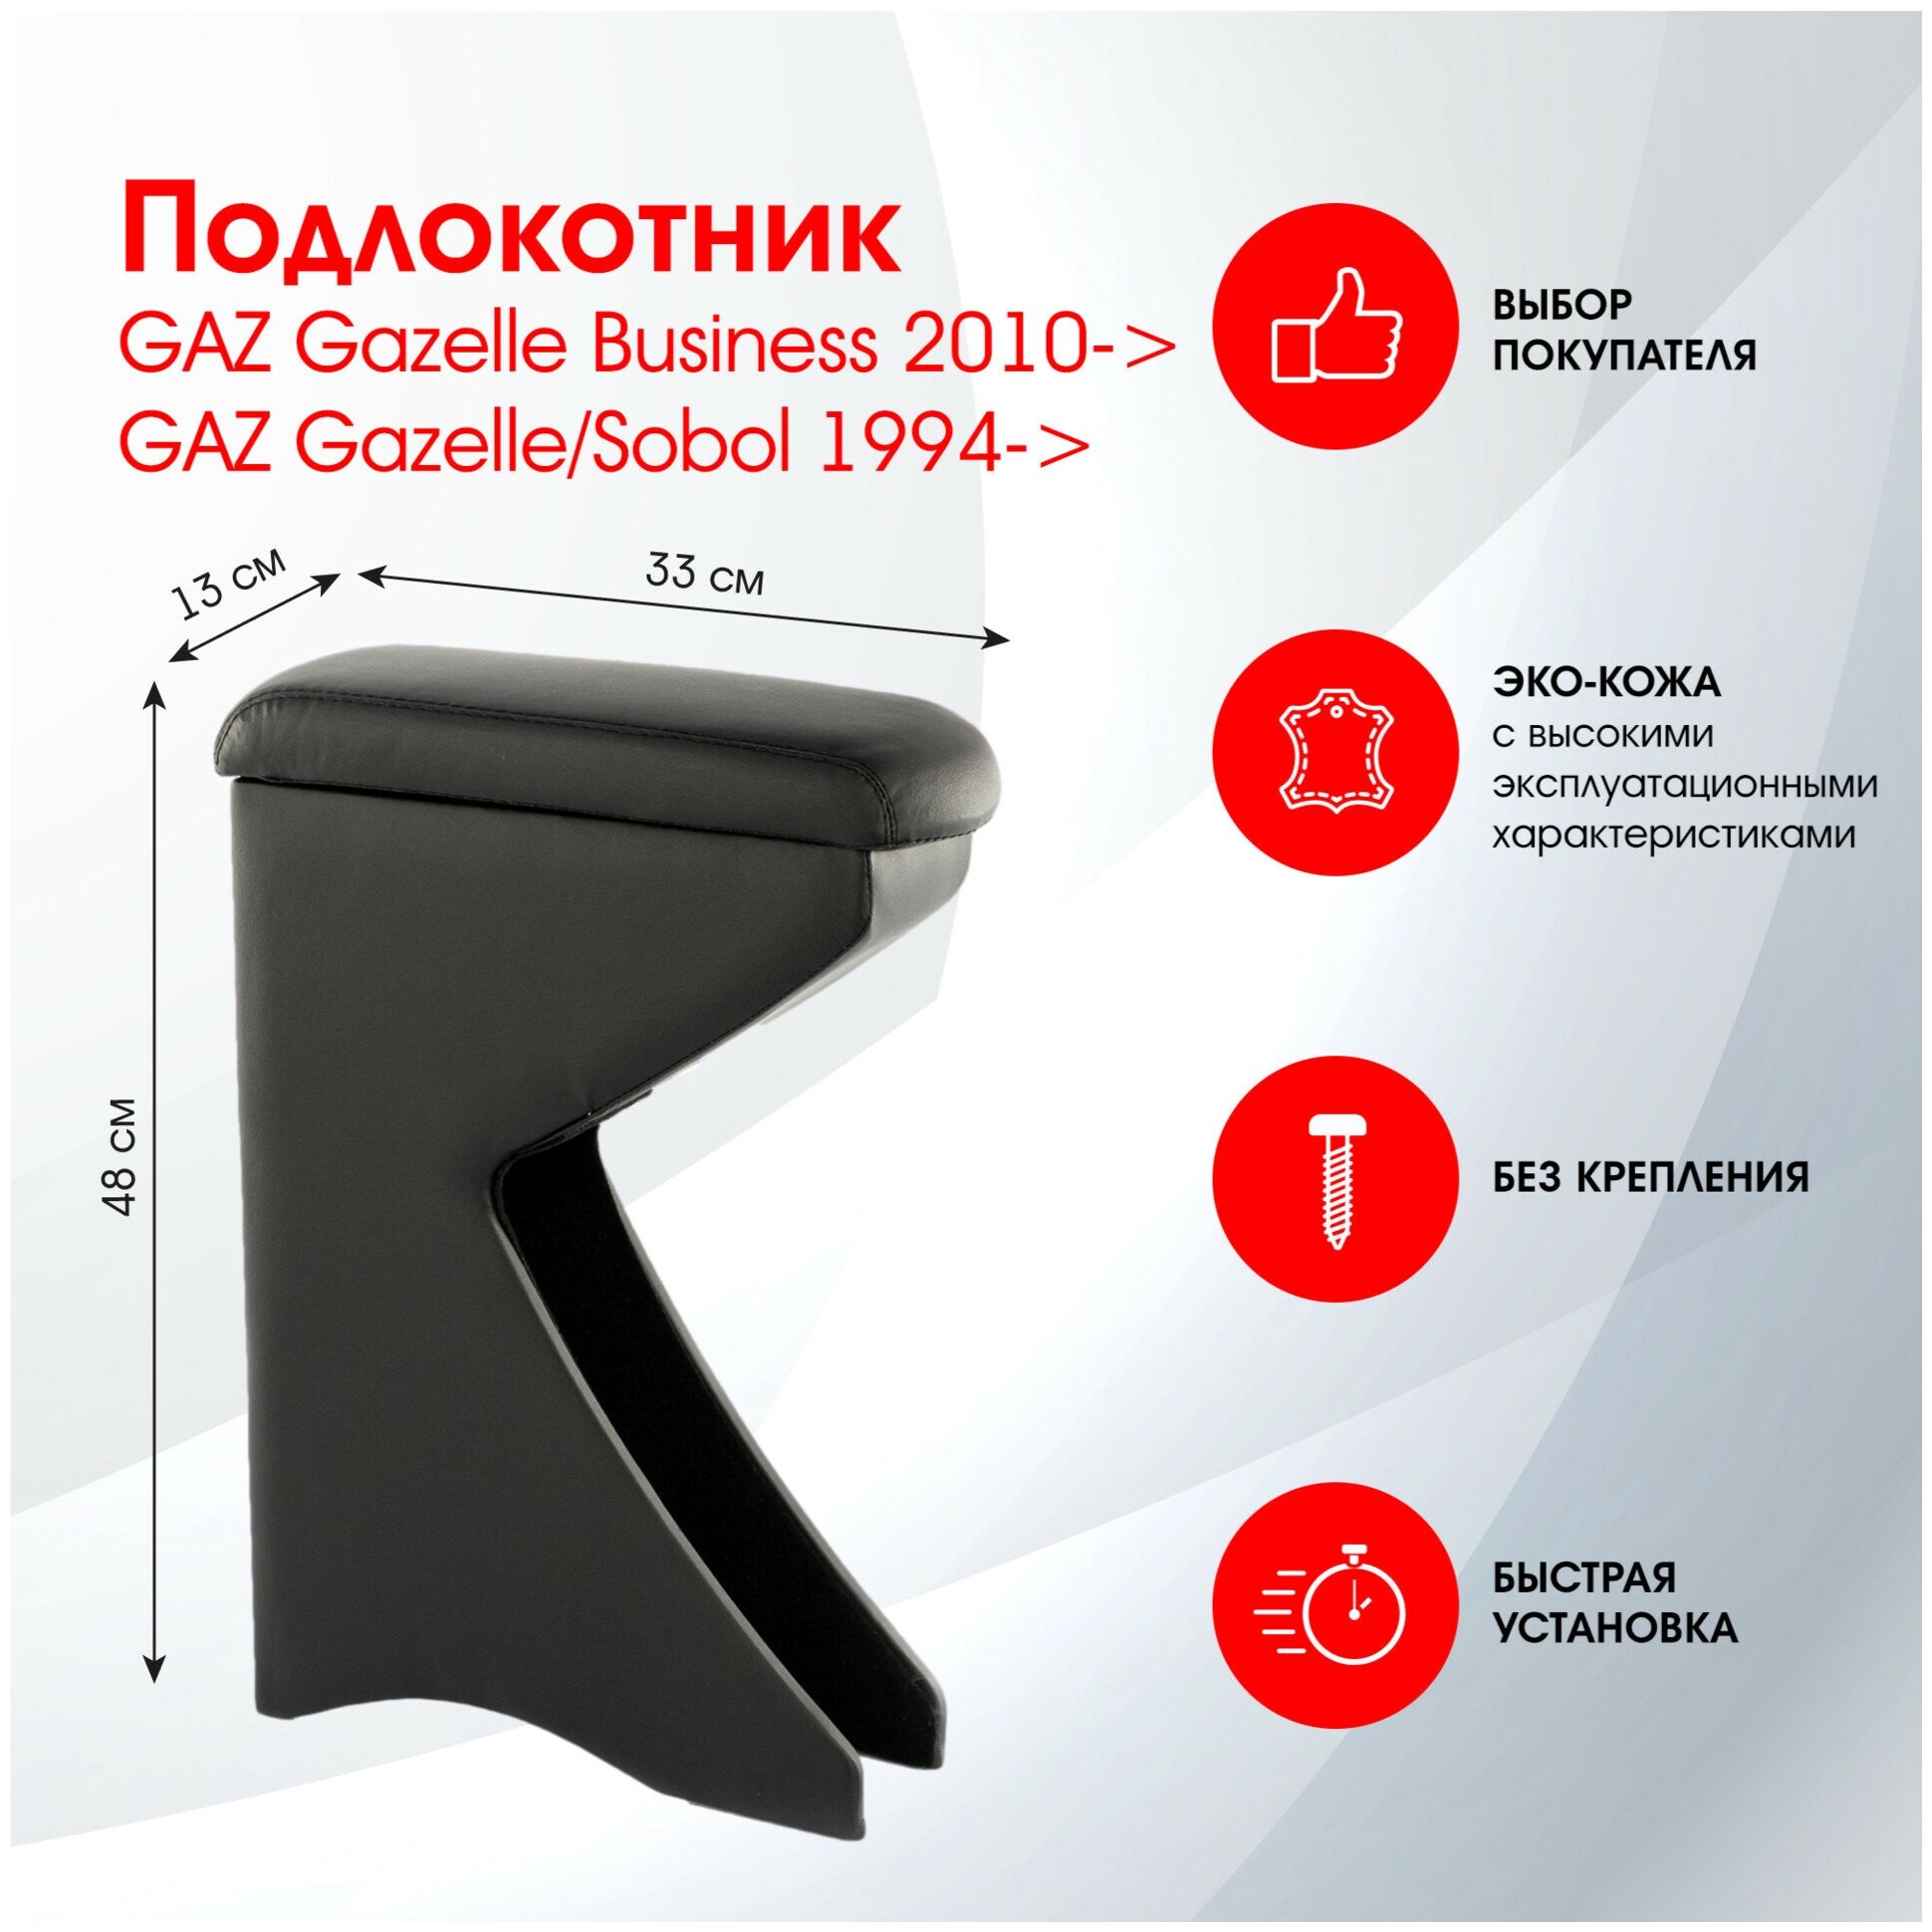 Подлокотник GAZ Gazelle Business 2010->; GAZ Gazelle/Sobol 1994-> черный эко-кожа FR313QS2/DR313QS2